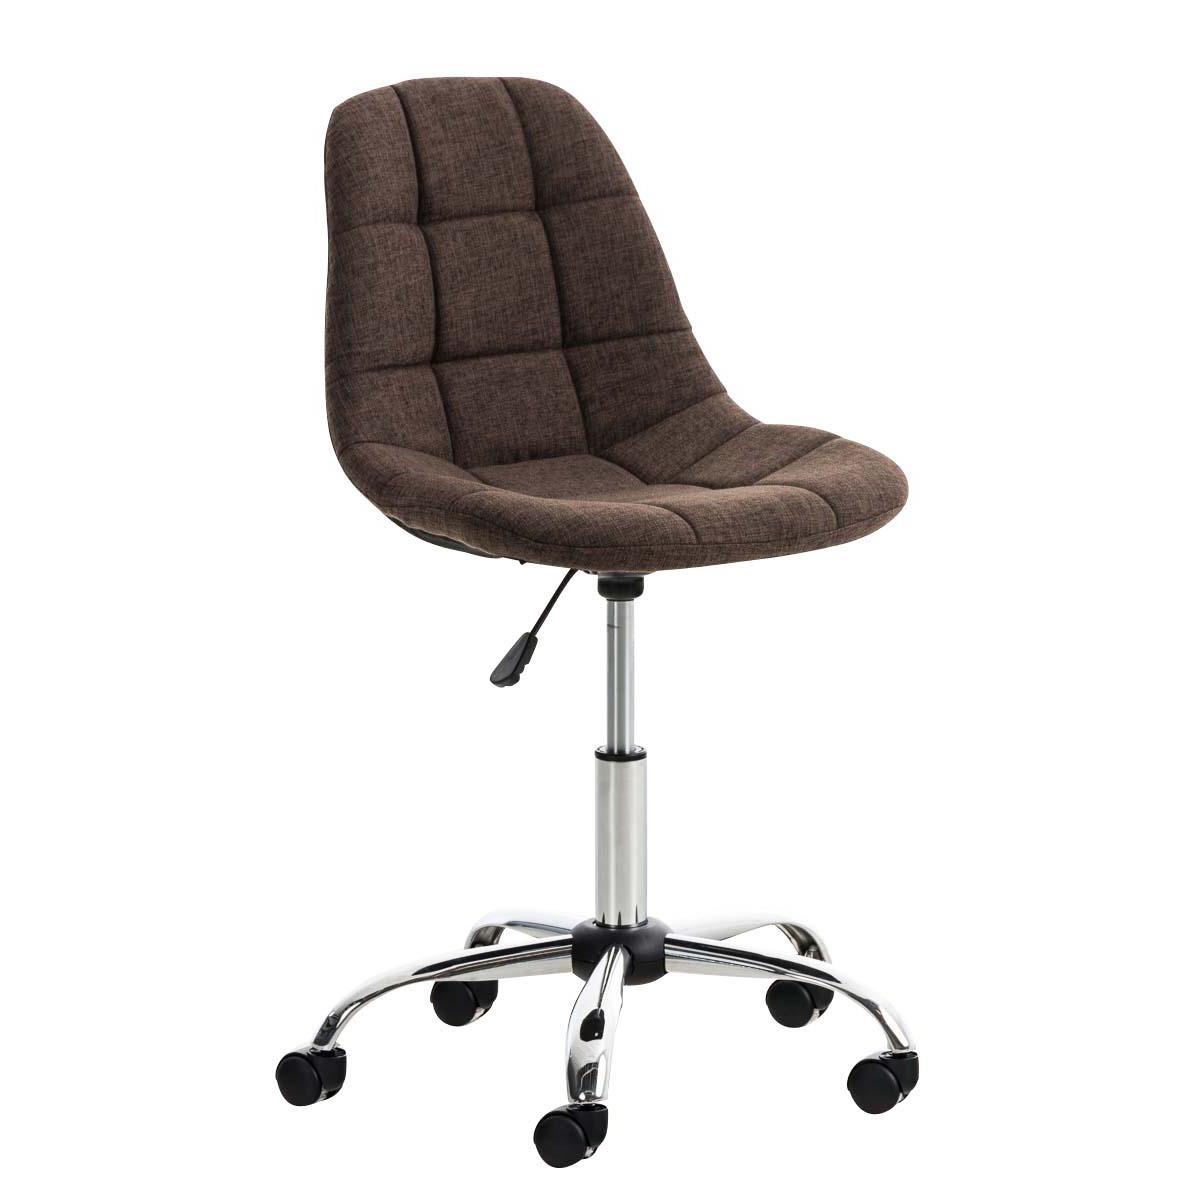 Chaise de bureau EMILY, Structure métallique, Design exclusif, revêtement Tissu, Marron